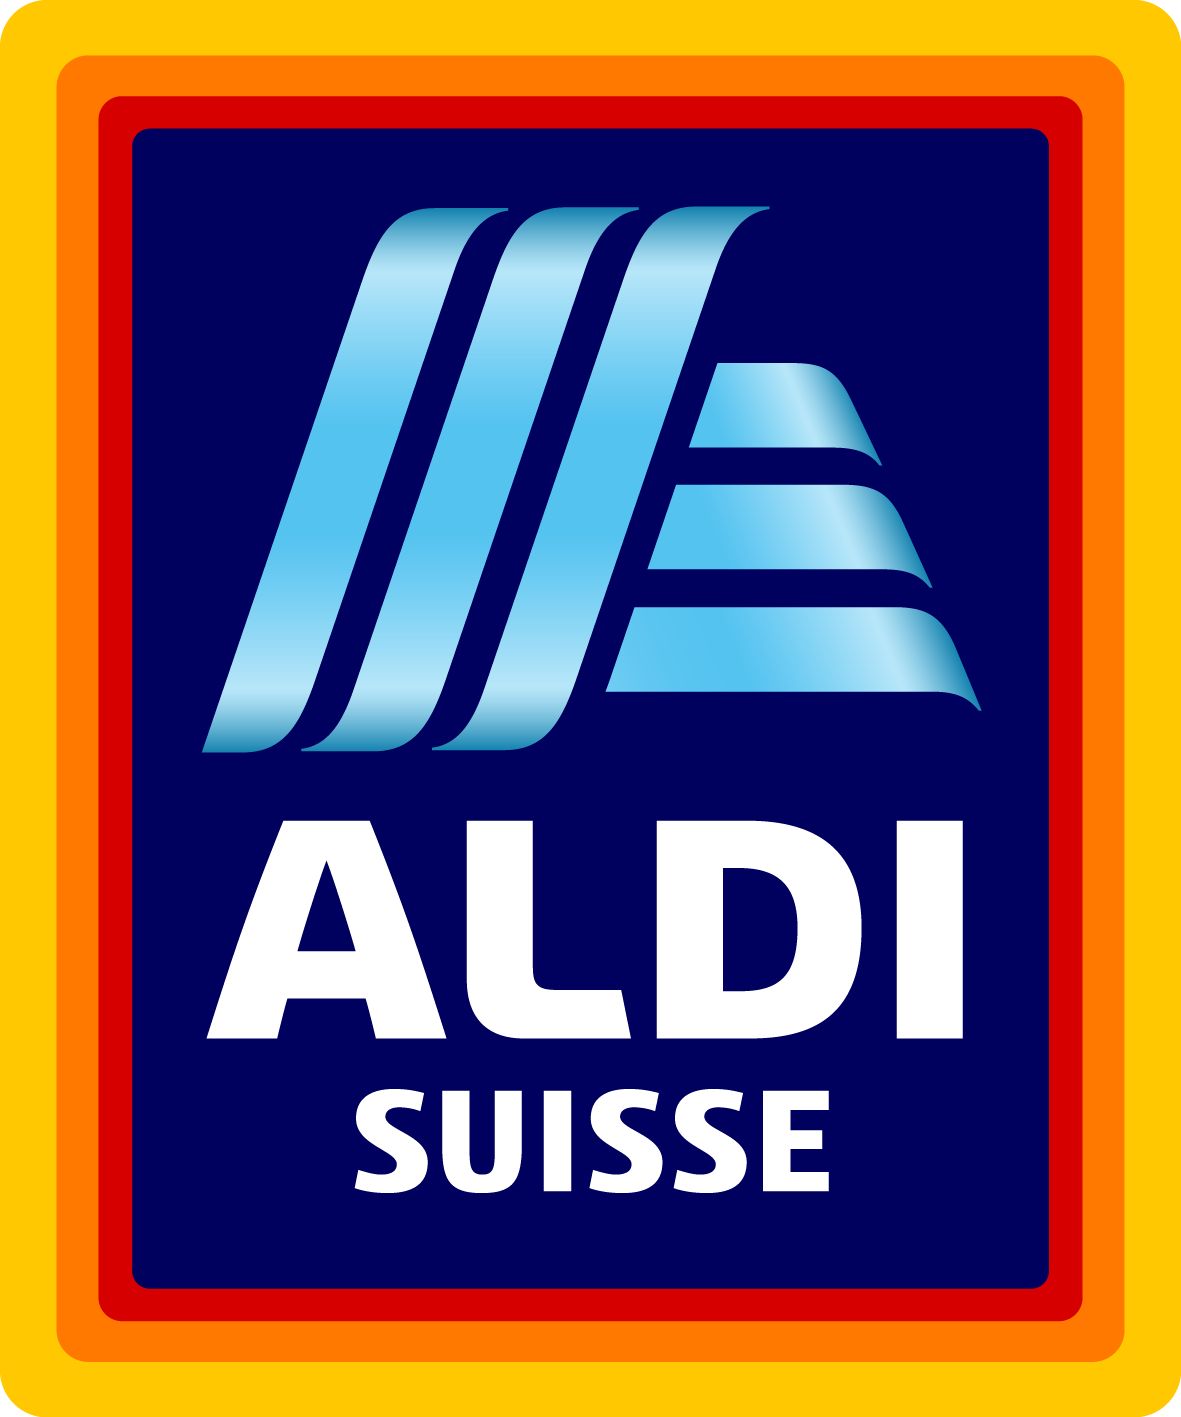 DT-Medical: Aldi Suisse